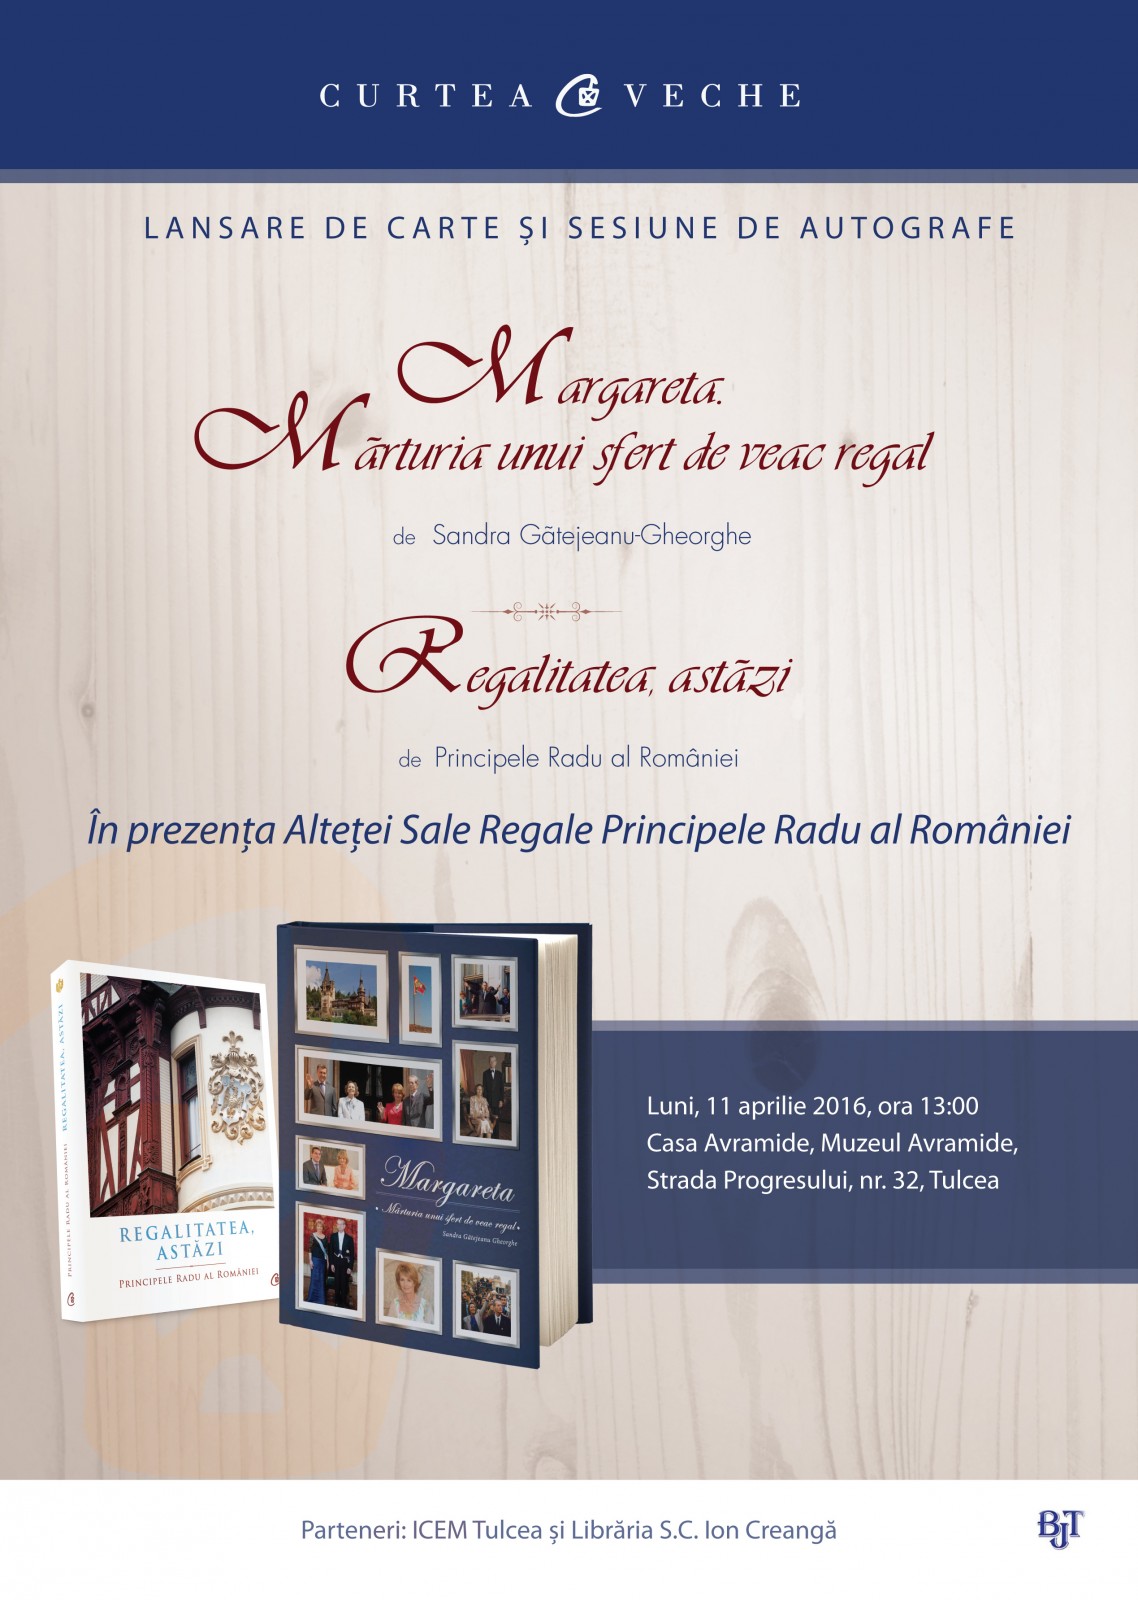 Prezentare de carte regală în prezența  ASR Principele Radu al României la Tulcea